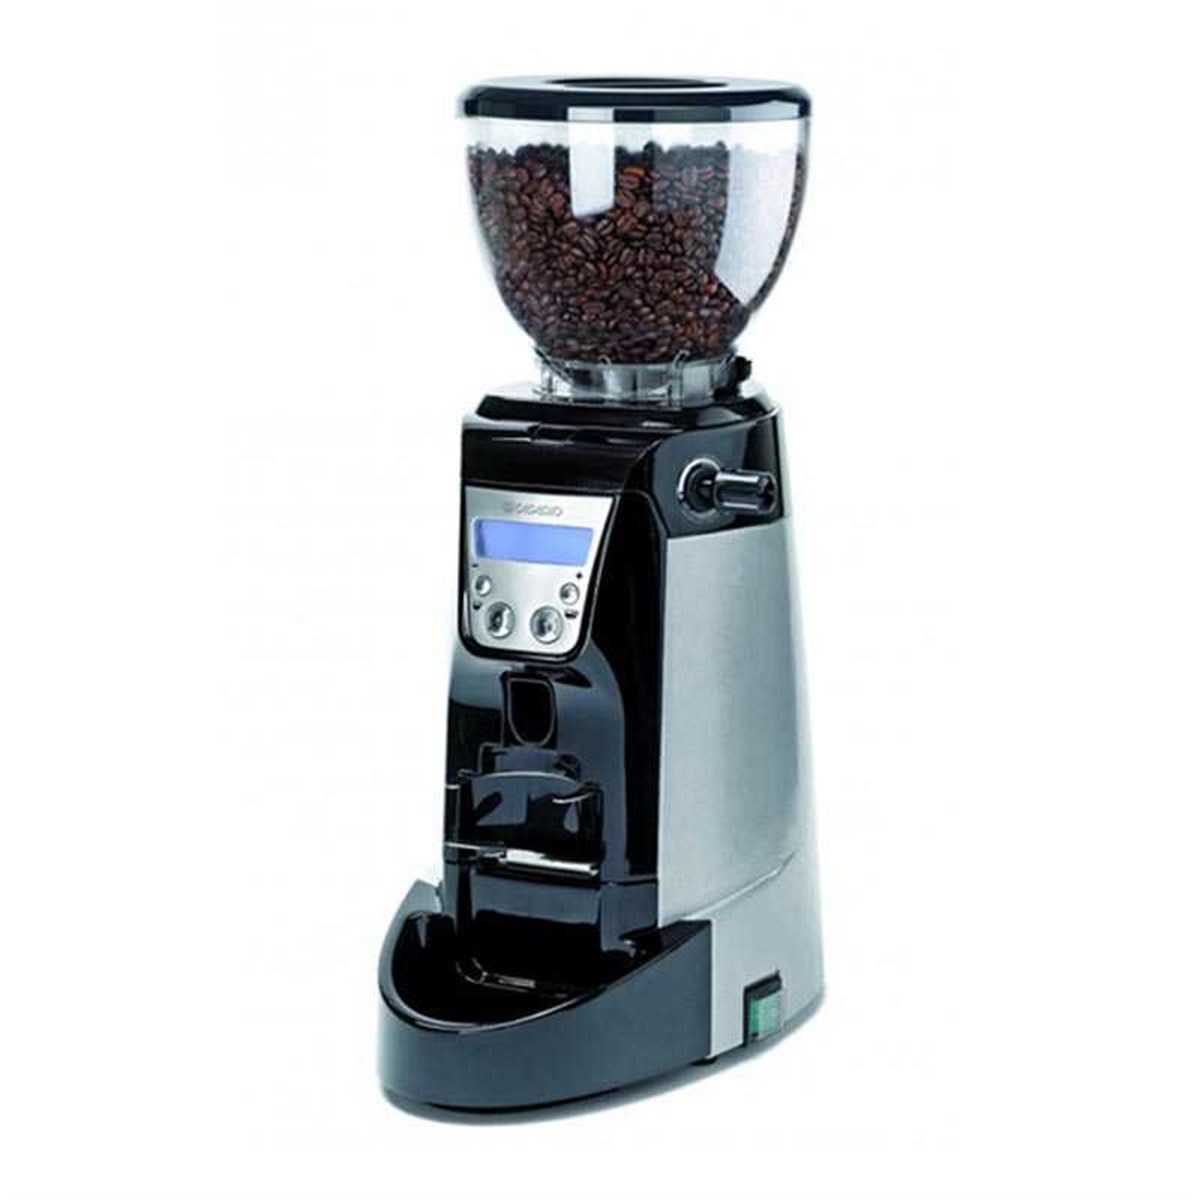 Недорогие кофемашины для зернового кофе